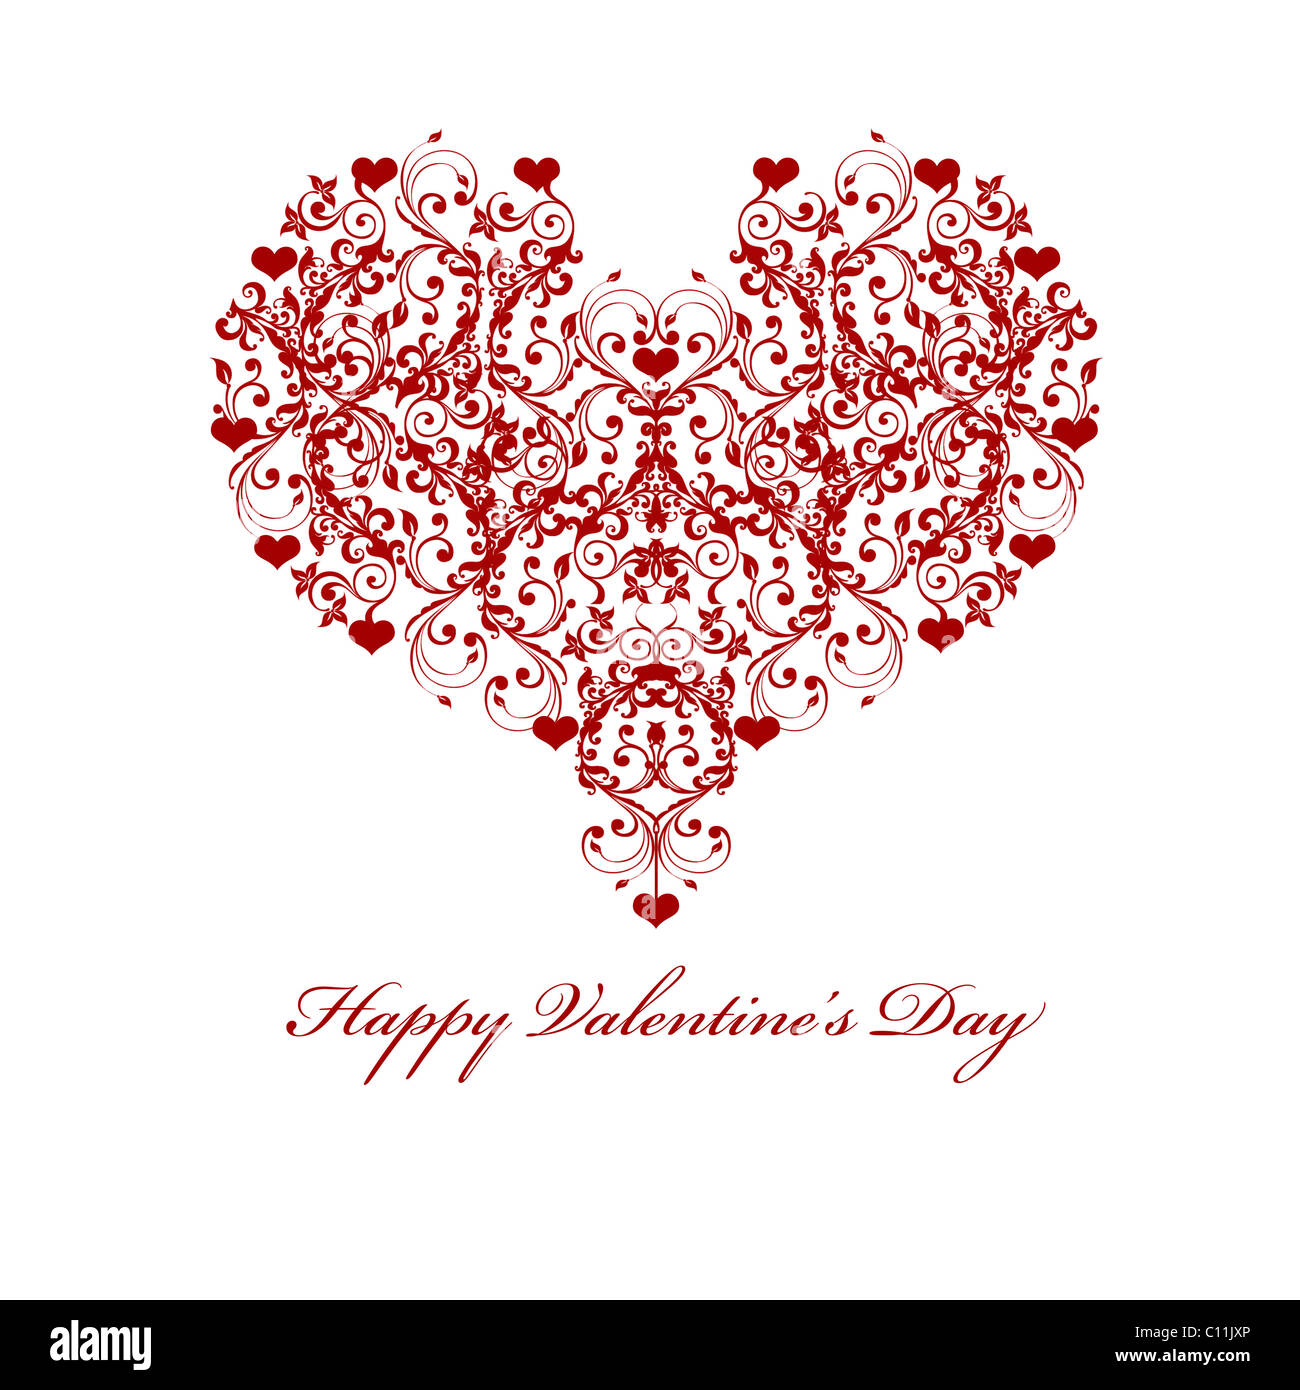 Happy Valentines Day Blatt Rebe Herzen Motiv Illustration Stockfoto